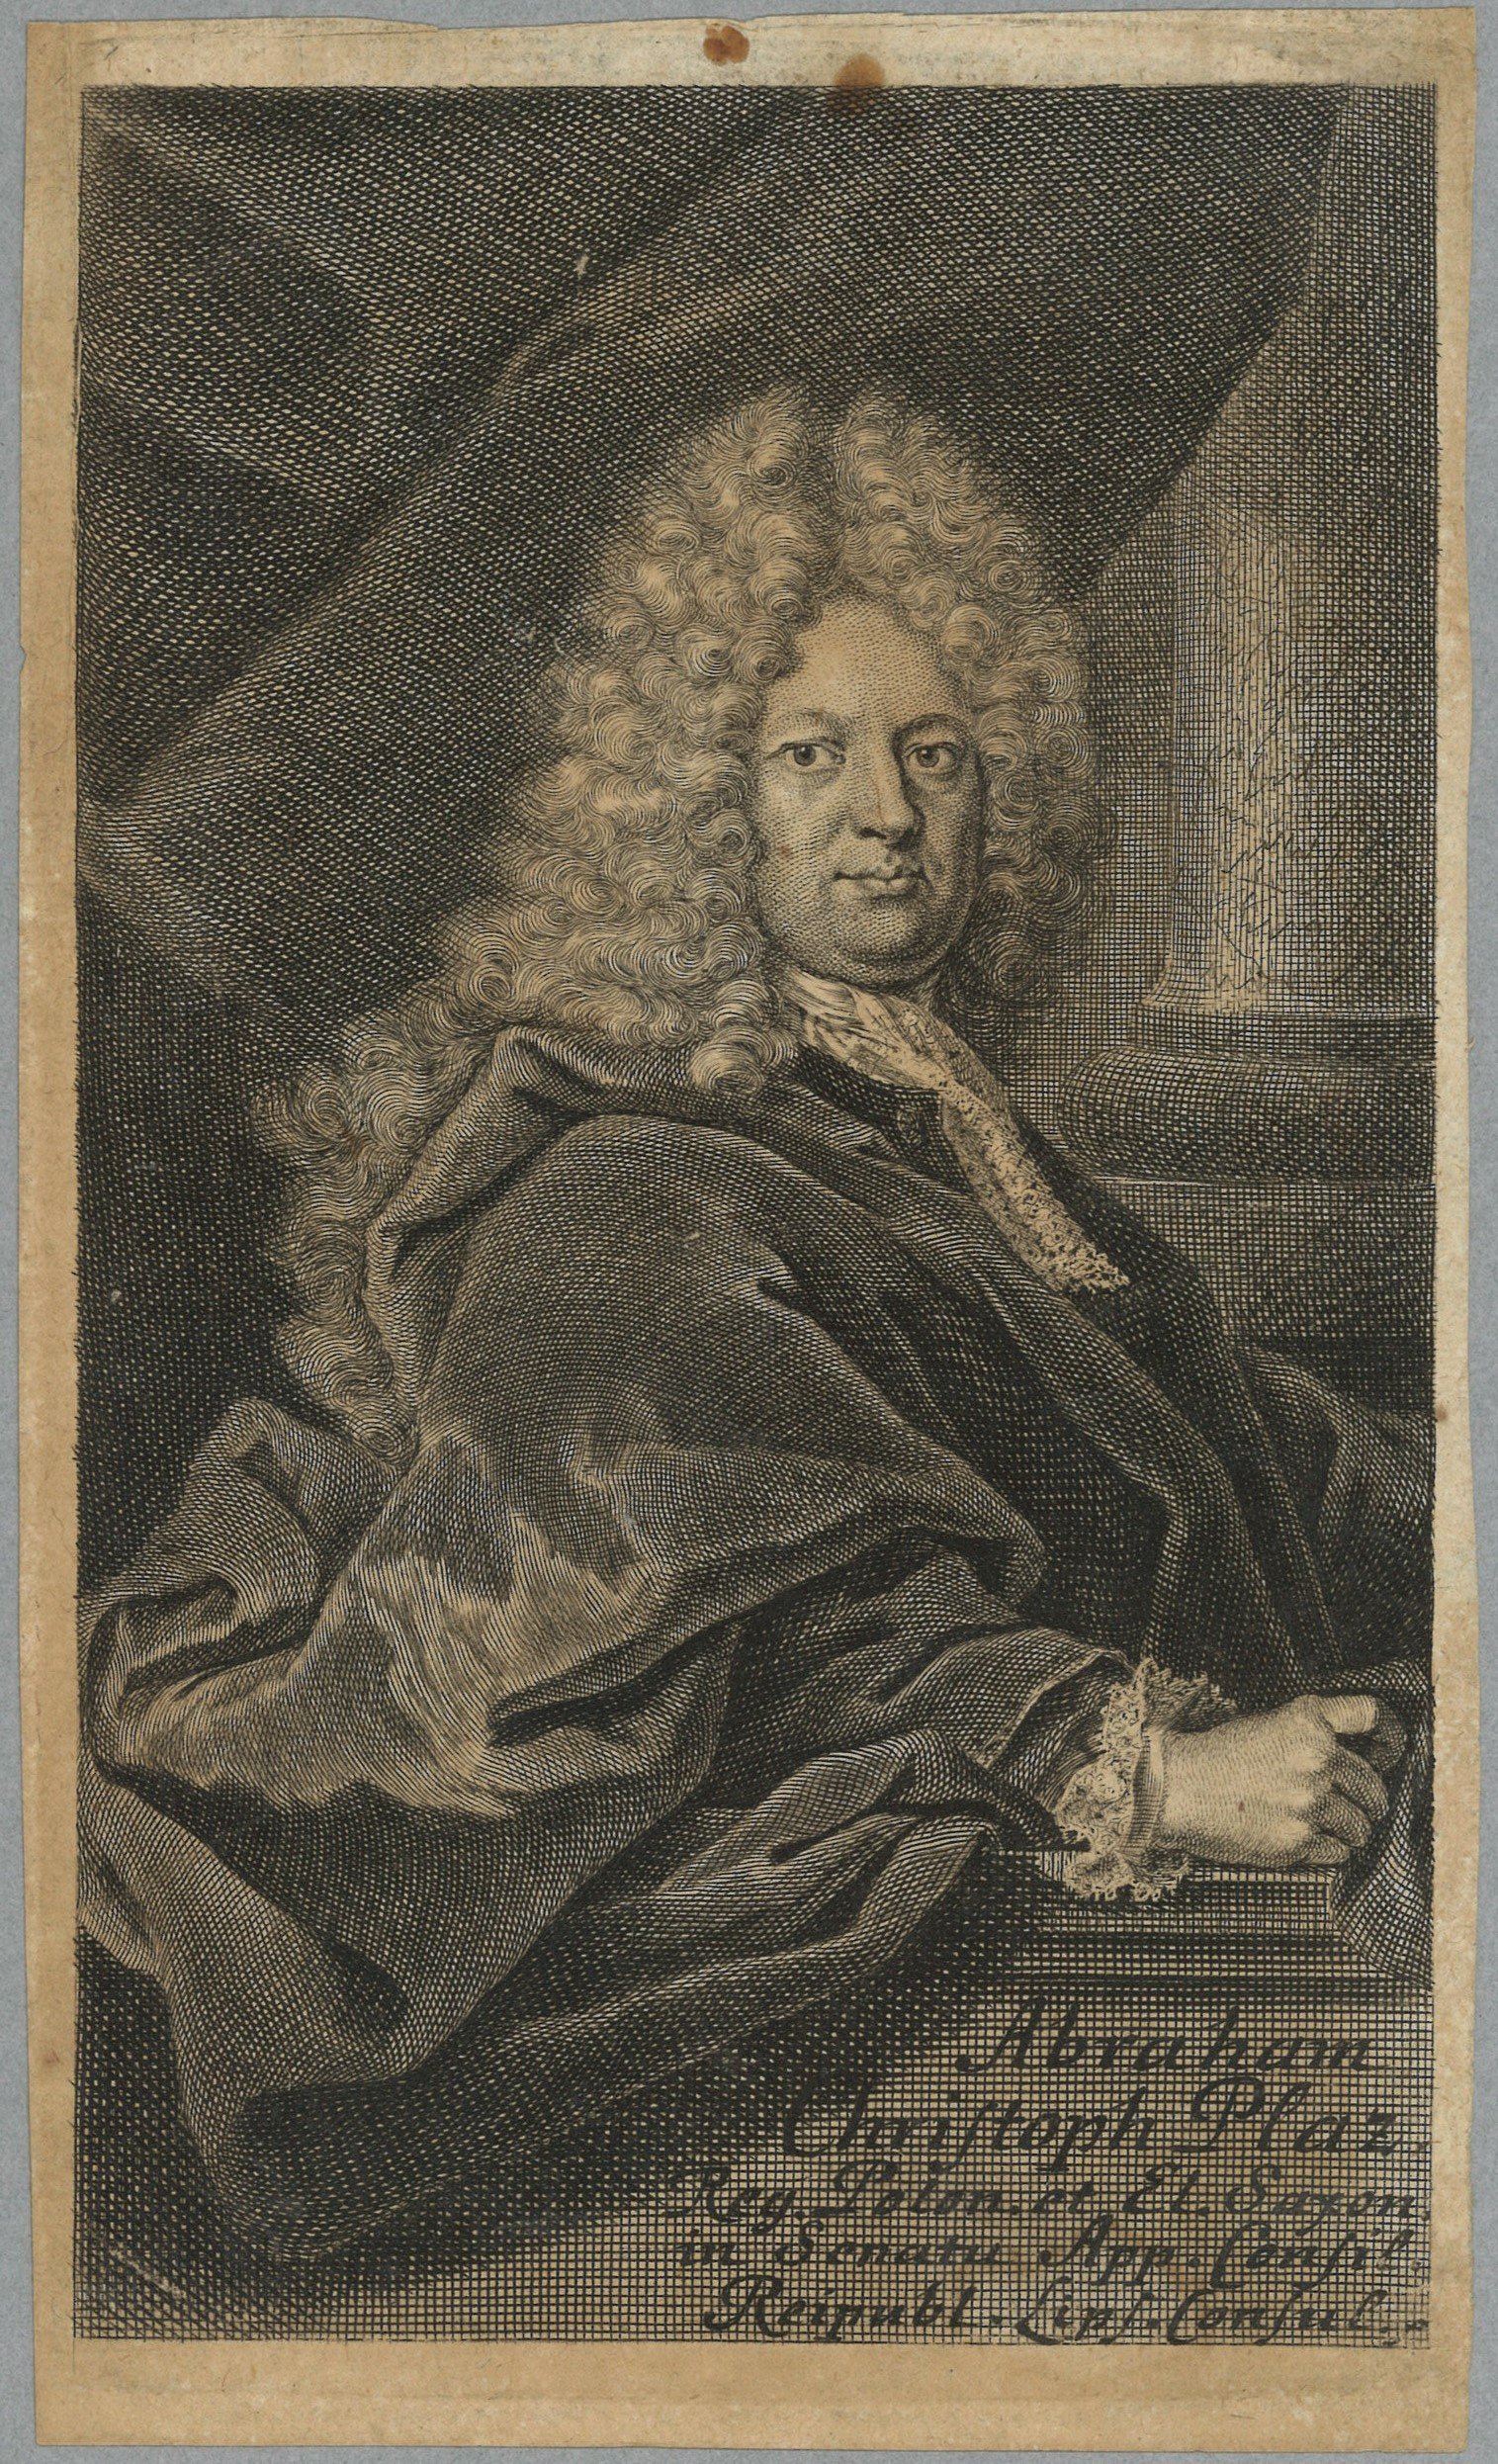 Plaz, Abraham Christoph (1658–1728), Jurist, Bürgermeister von Leipzig (Landesgeschichtliche Vereinigung für die Mark Brandenburg e.V., Archiv CC BY)